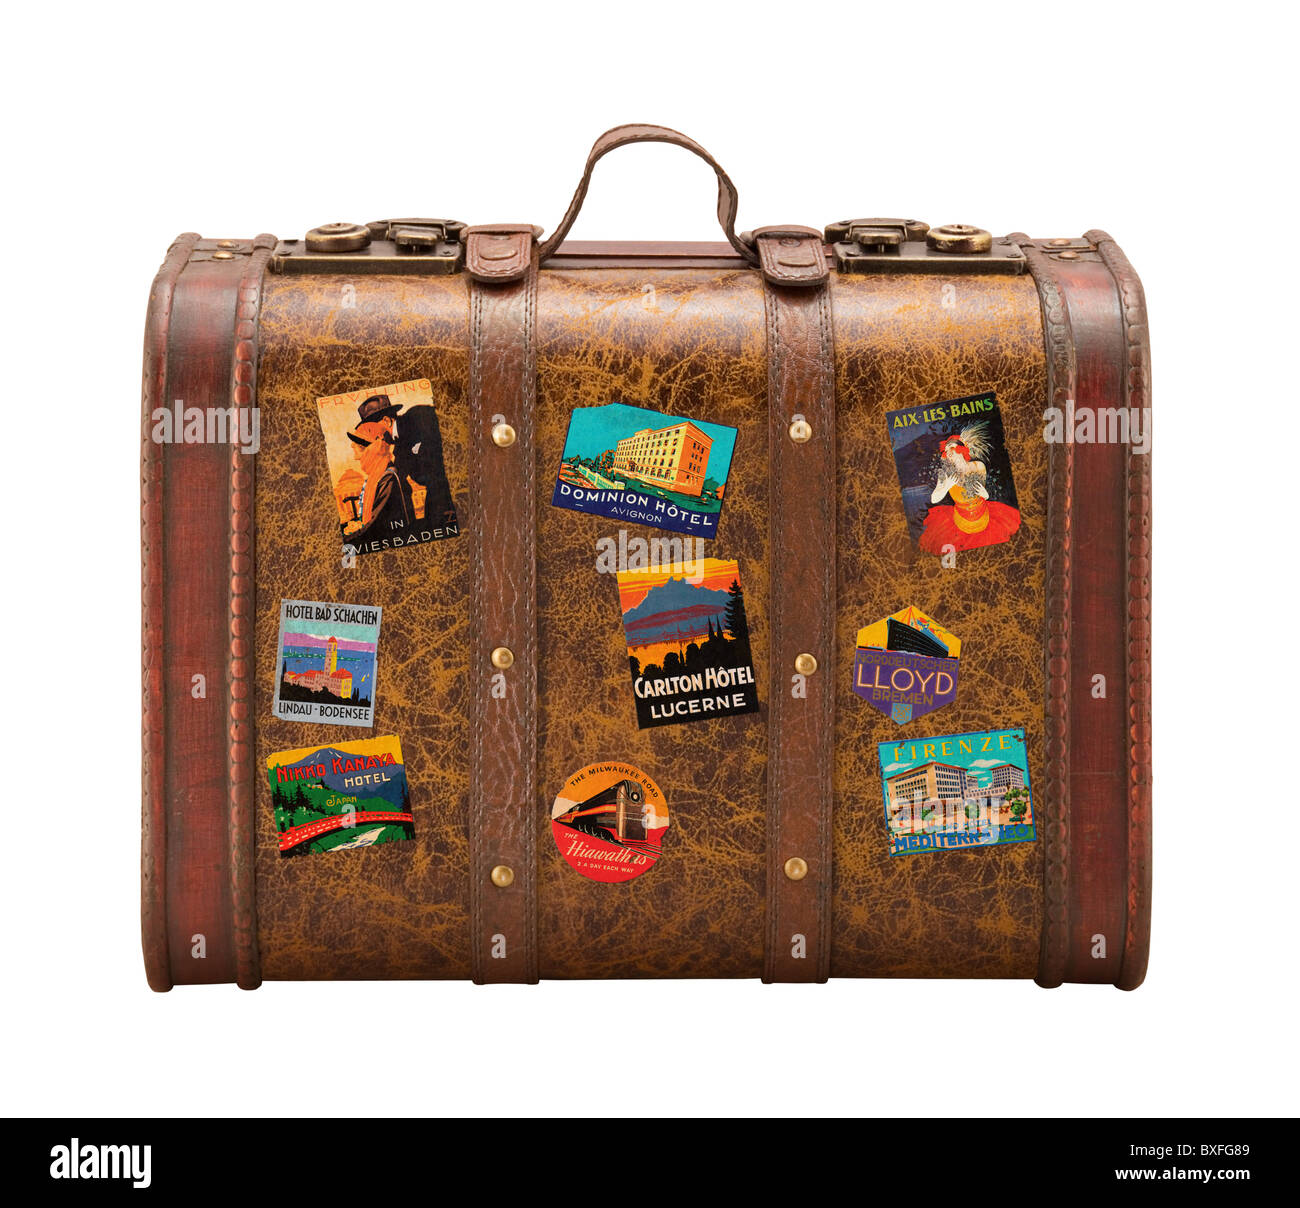 Alte Koffer Reisen Aufkleber isoliert auf weißem Hintergrund  Stockfotografie - Alamy